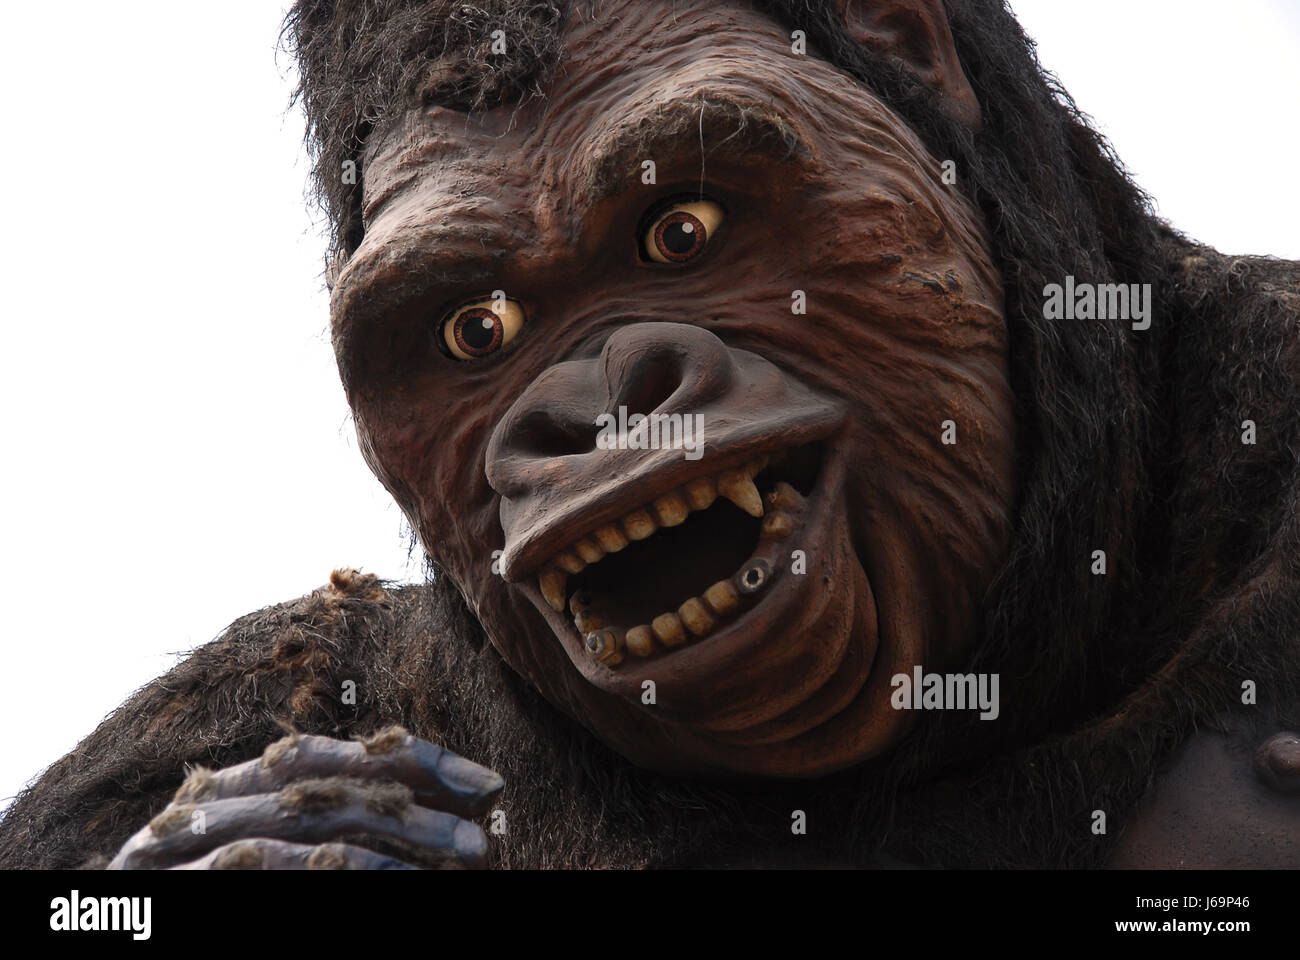 La scimmia antropoide grande aspetto grande enorme extreme potente imponente Foto Stock